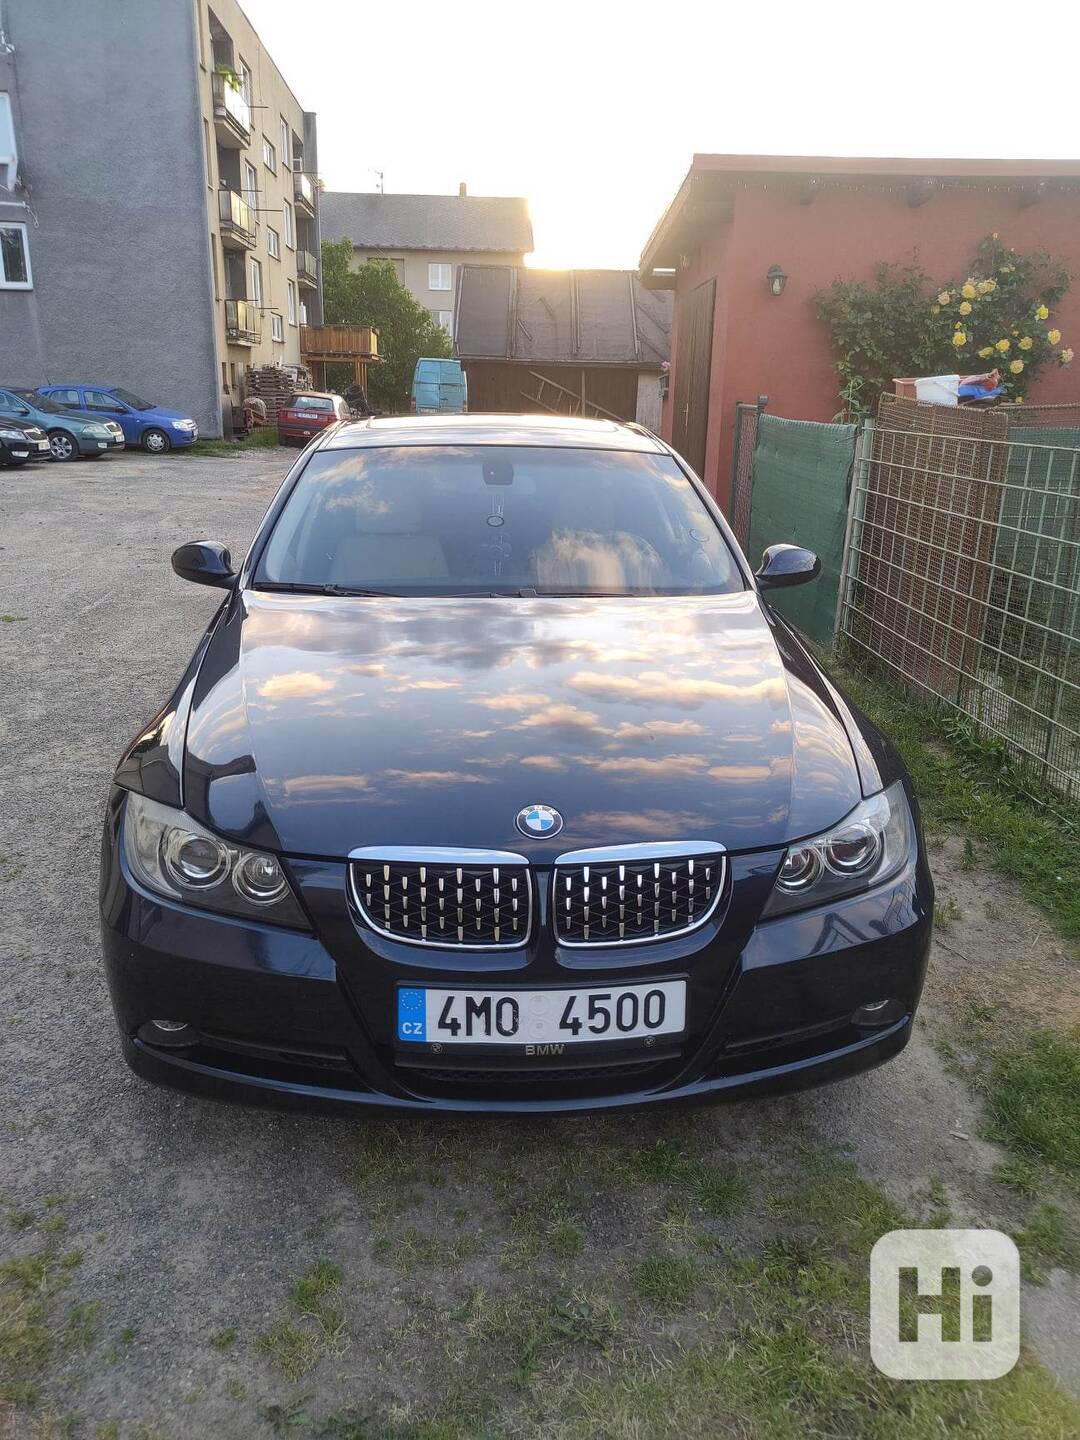 BMW 325i 160kw N52b25 - foto 1